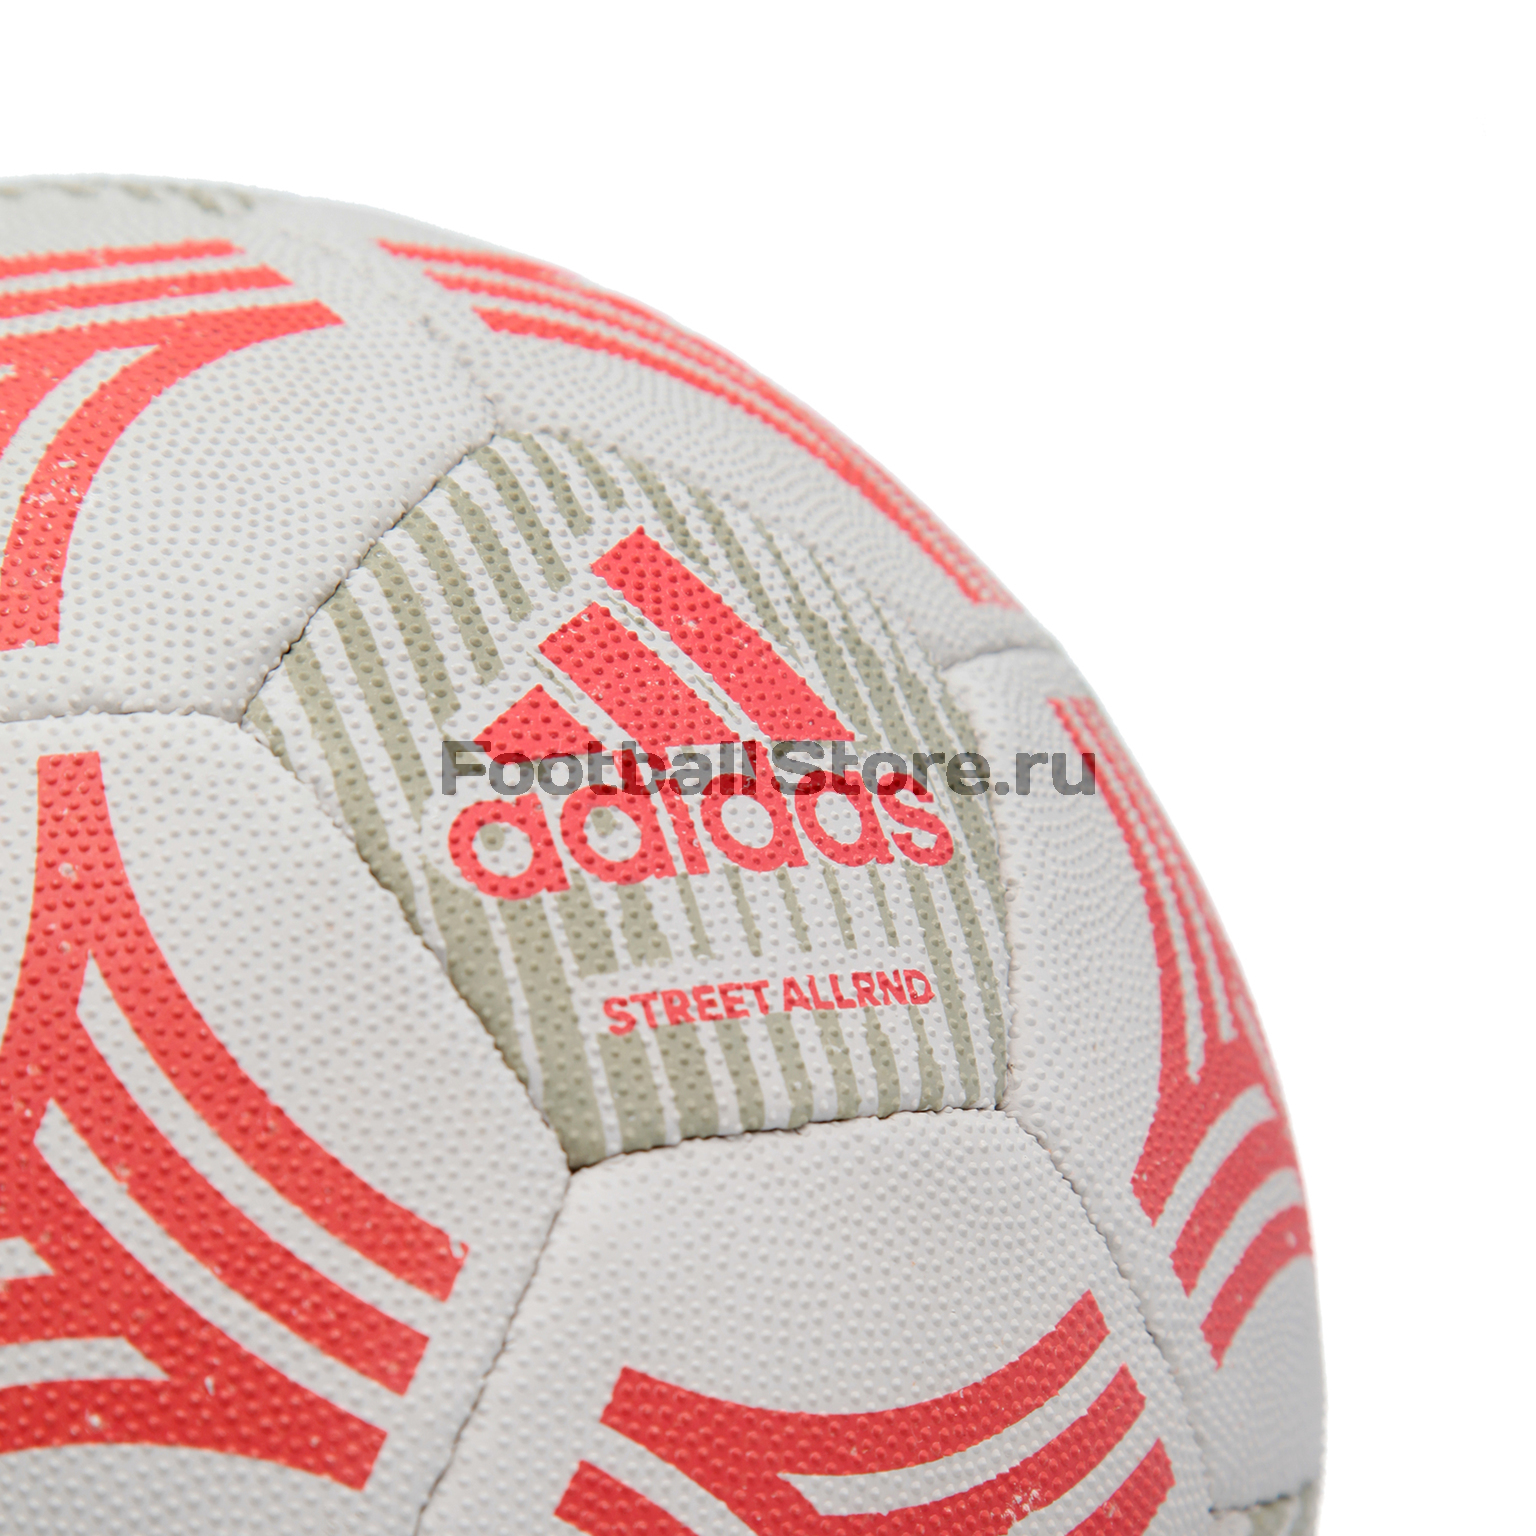 Футбольный мяч Adidas Tango Allround CE9980